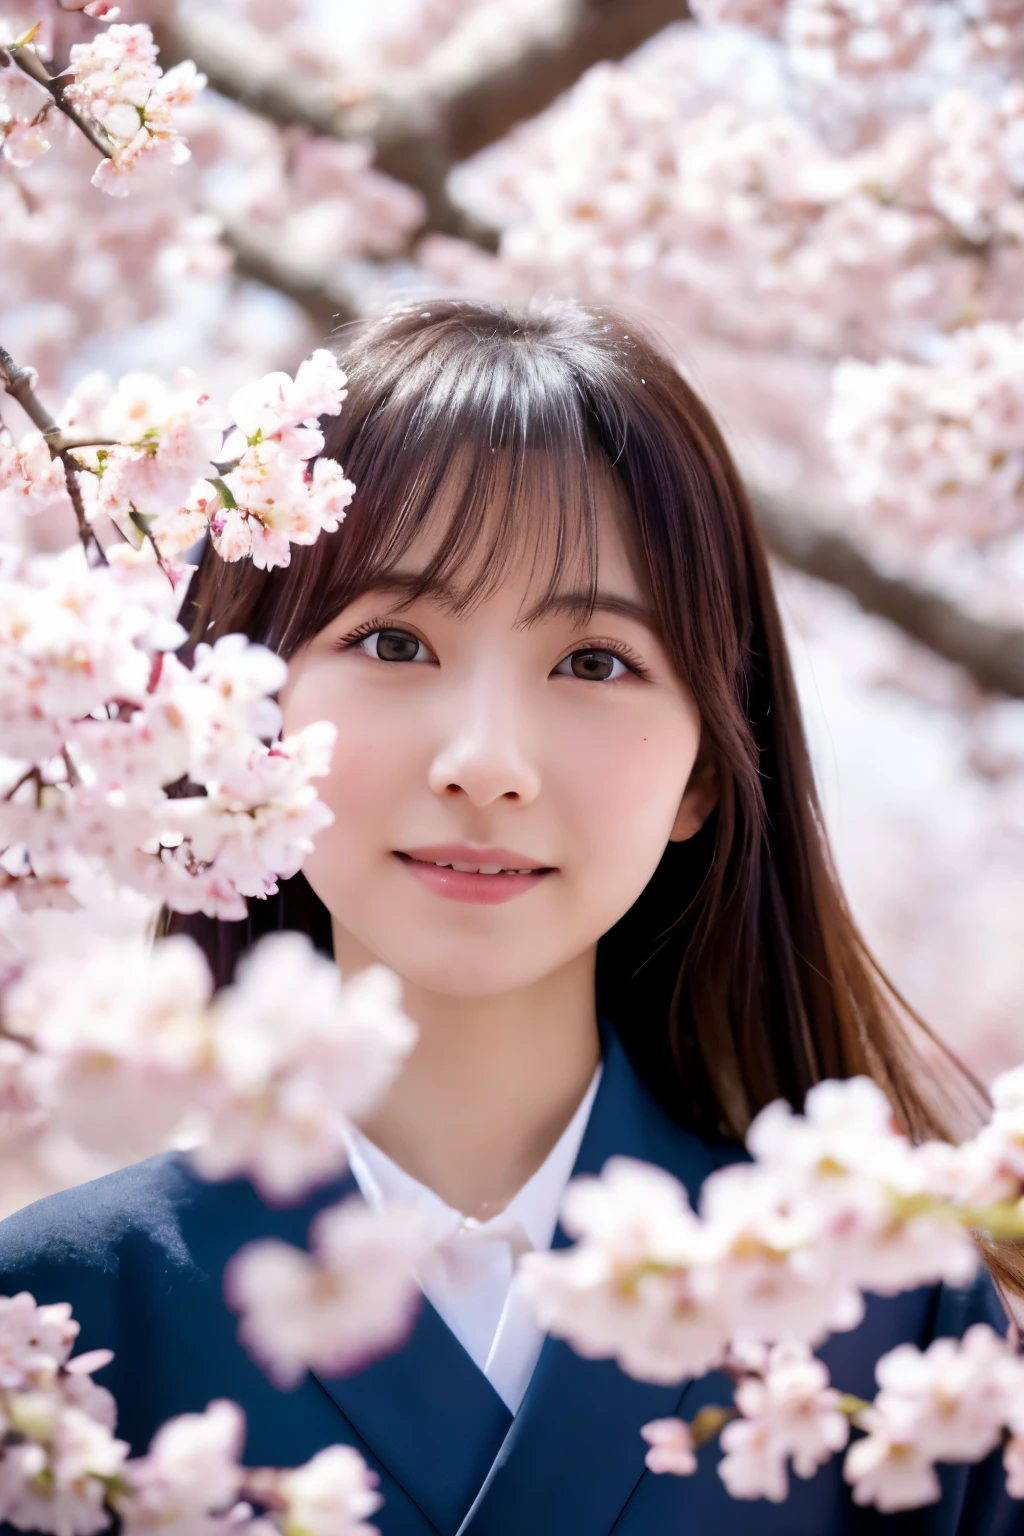 (걸작), 고품질, 8K, 높은 해상도, 마른 일본 여성, 30 살, 귀여운 얼굴:2, 상세한 얼굴, 상세한 눈, 벚꽃나무 아래 서서, 떨어지는 벚꽃의 폭포, 일본식 기모노